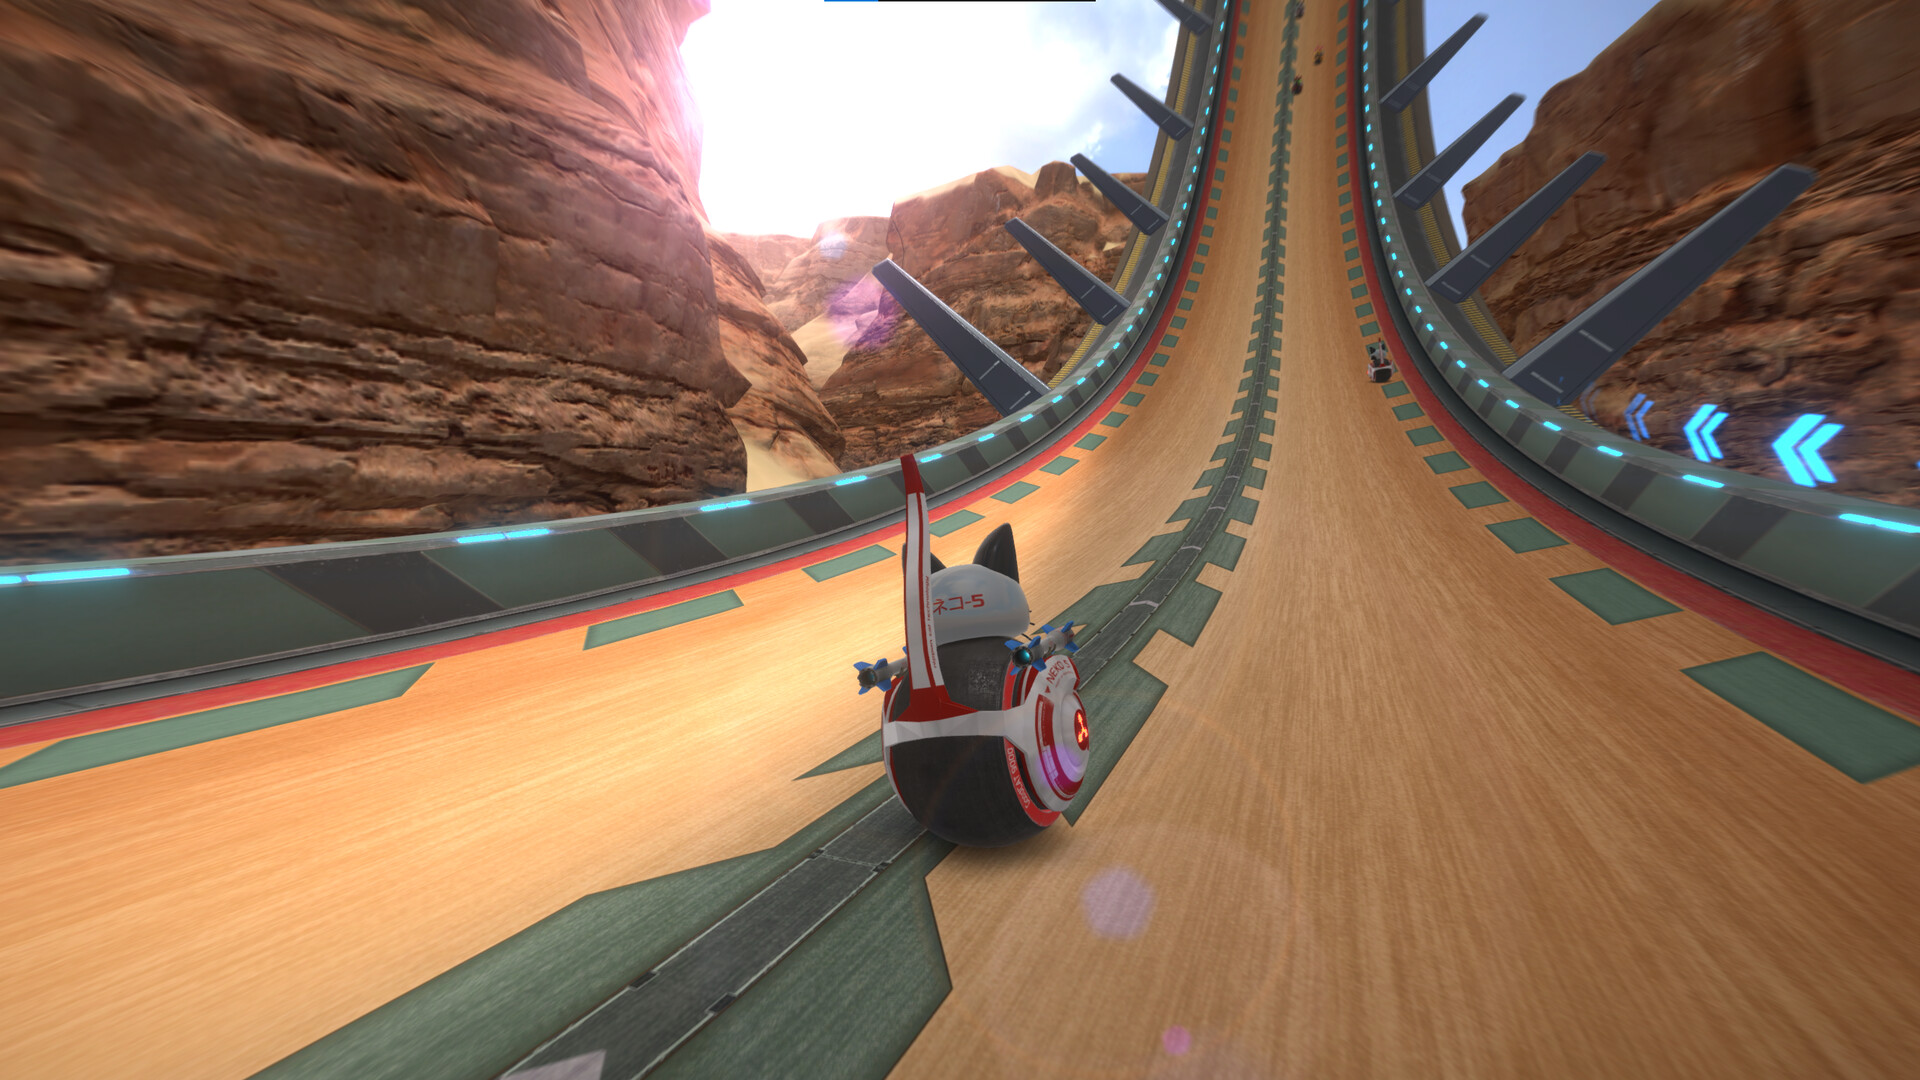 RiMS Racing, jogo de corrida e simulação com motocicletas, é anunciado para  o Switch